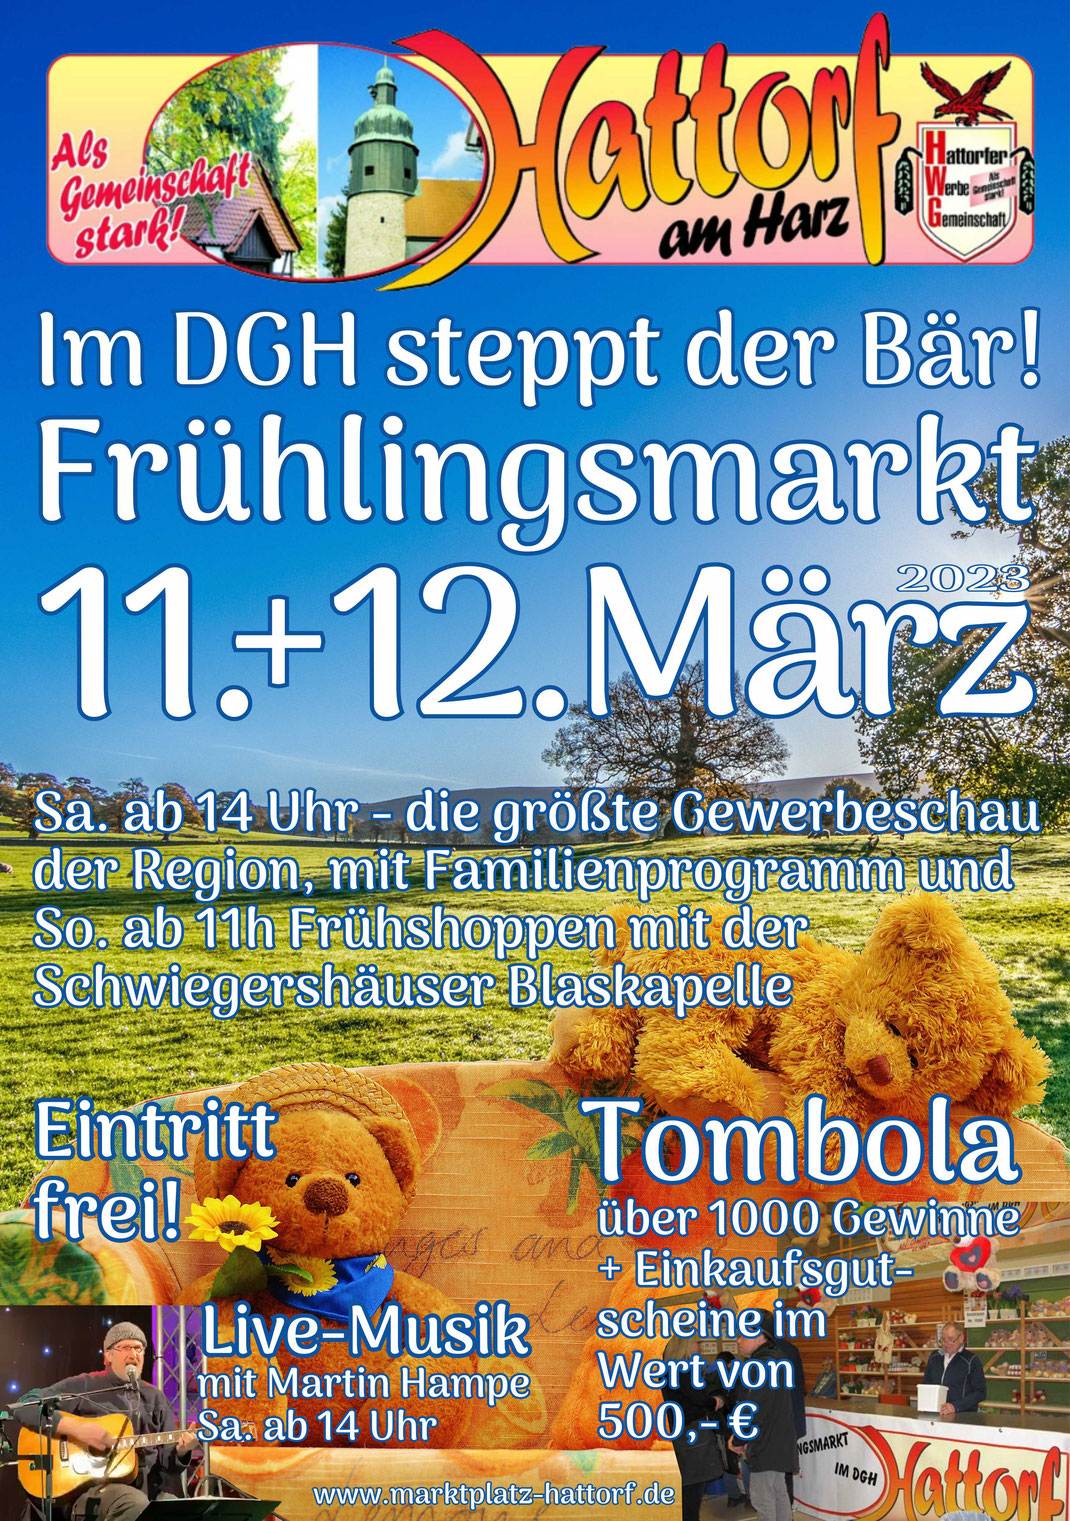 Plakat der Hattorfer Werbegemeinschaft e.V. mit der Bewerbung des Frühlingsmarktes 2023 mit Live-Musik, Programm und Tombola am 11. + 12. März 2023